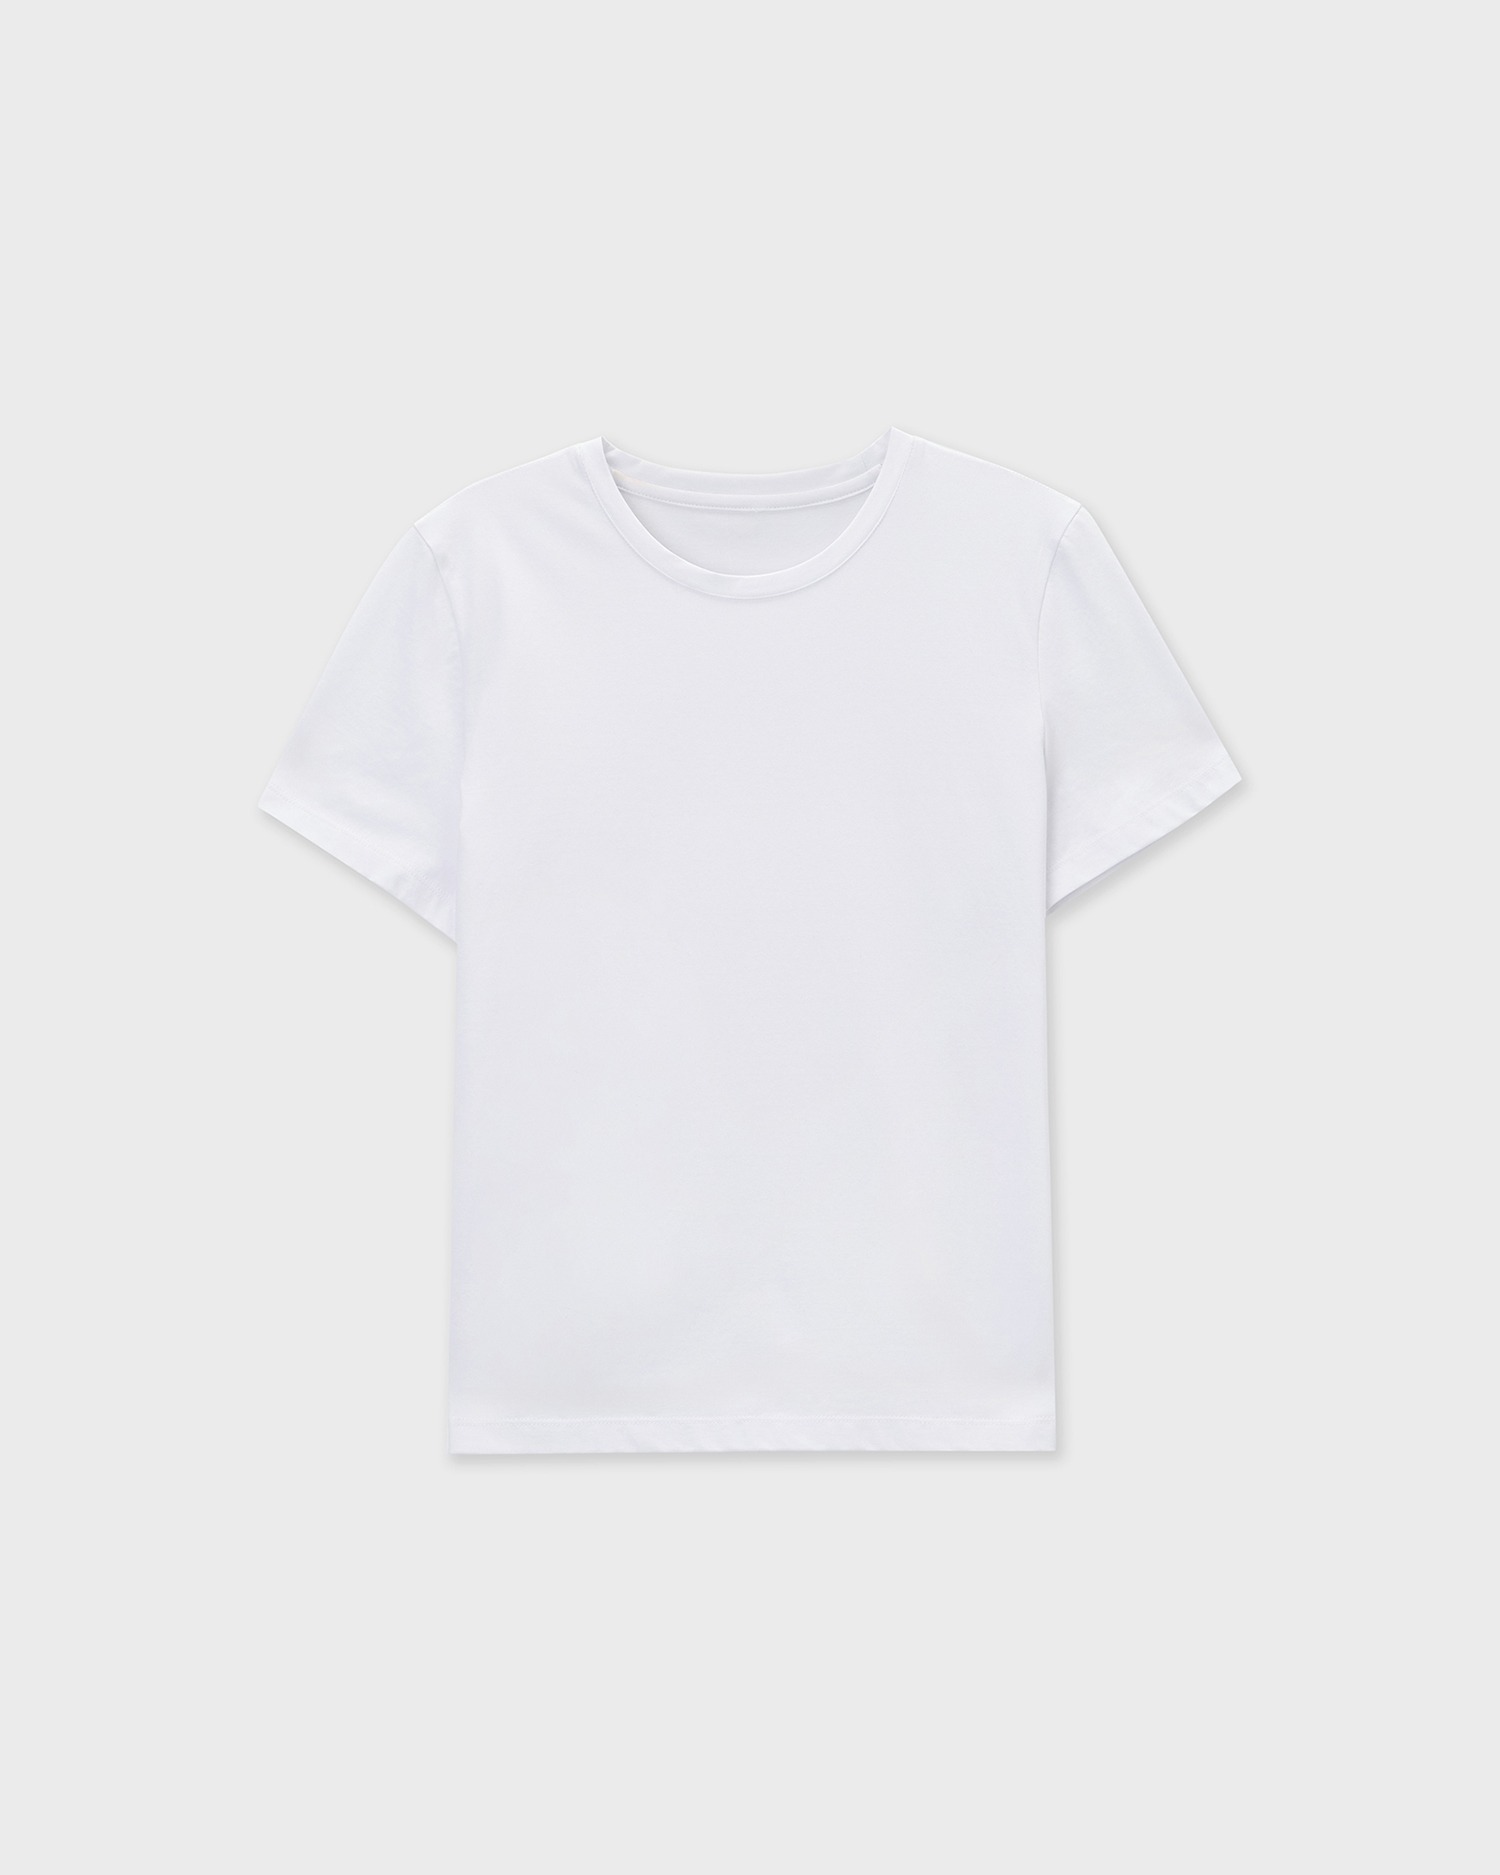 Essential T-Shirts - White